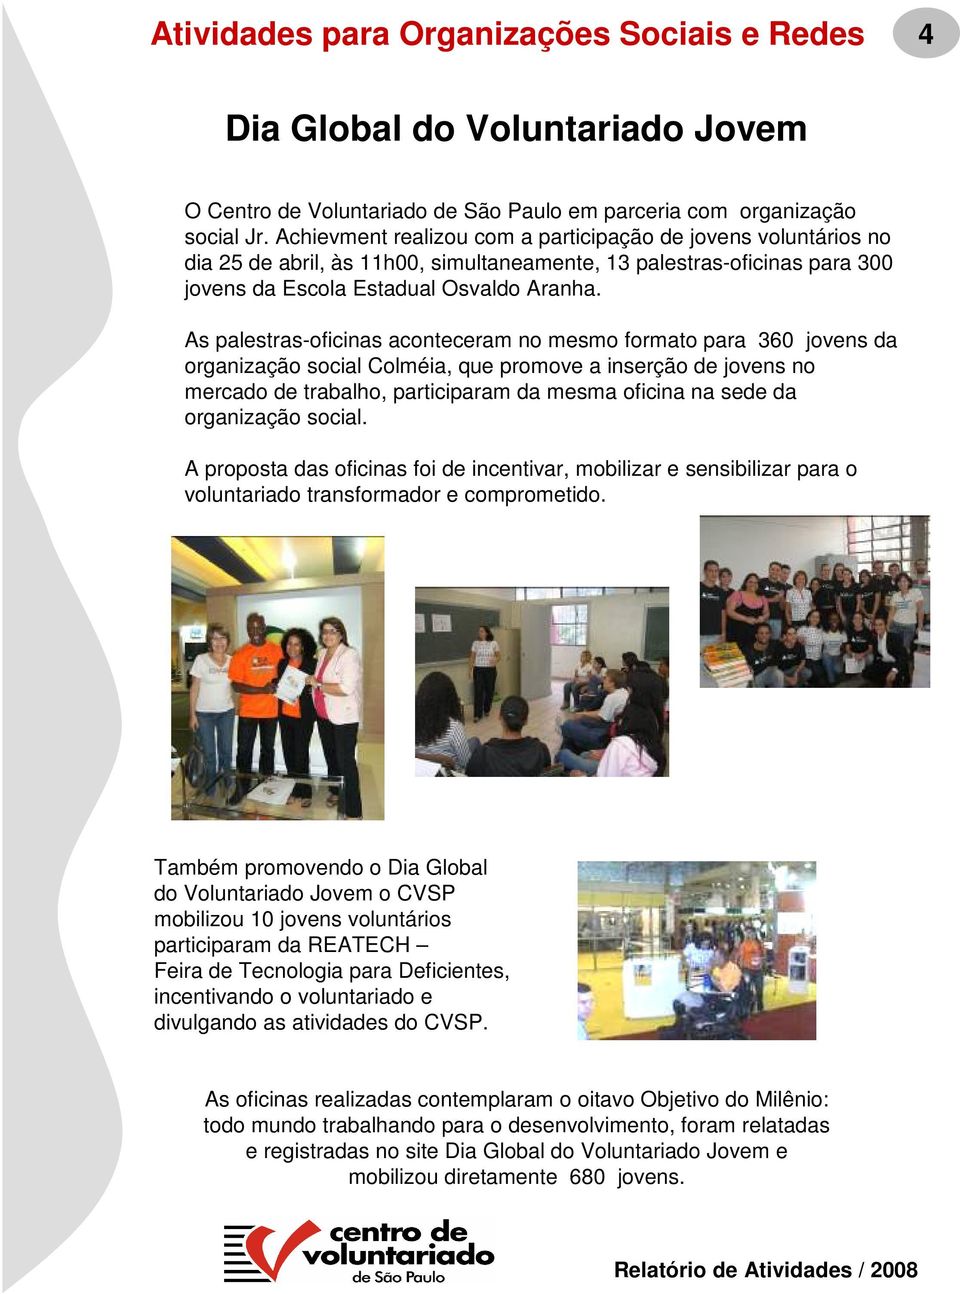 As palestras-oficinas aconteceram no mesmo formato para 360 jovens da organização social Colméia, que promove a inserção de jovens no mercado de trabalho, participaram da mesma oficina na sede da